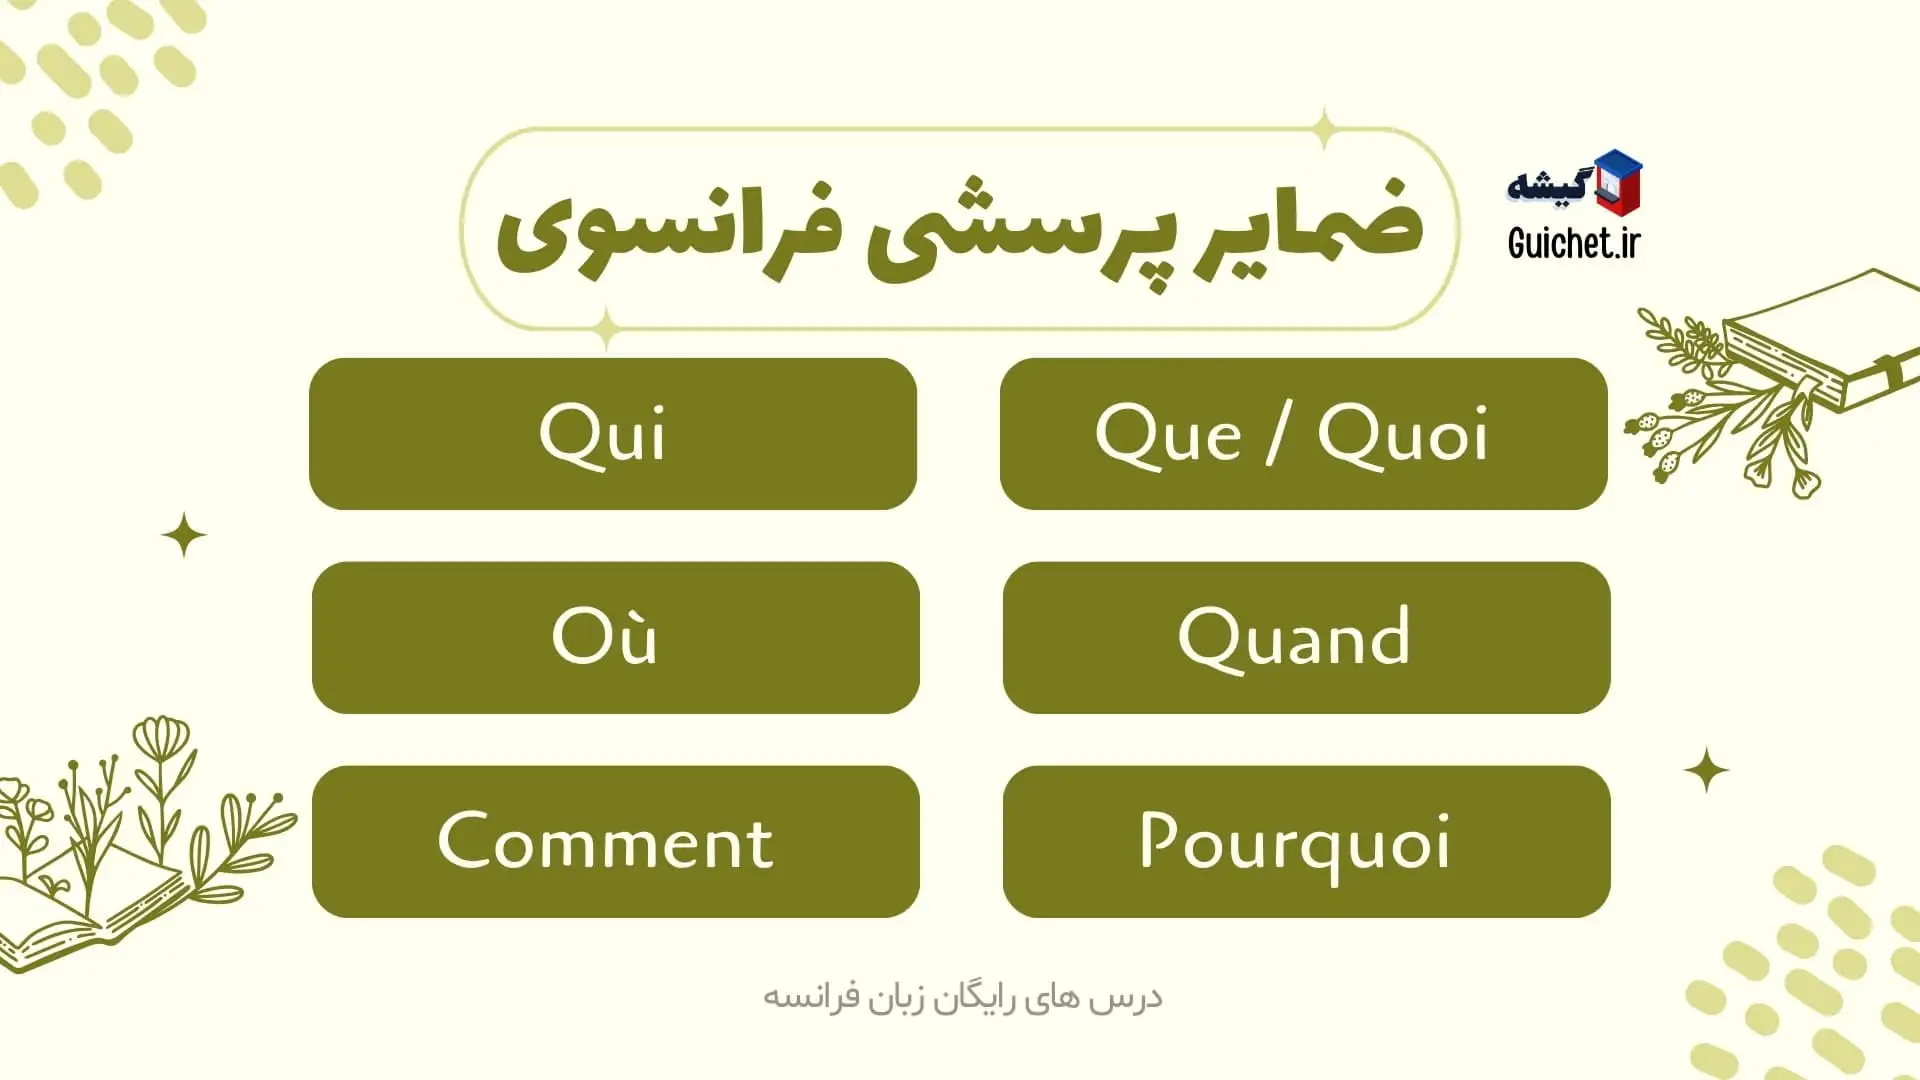 آموزش سوال پرسیدن به فرانسوی به همراه مثال های کاربردی و ترجمه فارسی